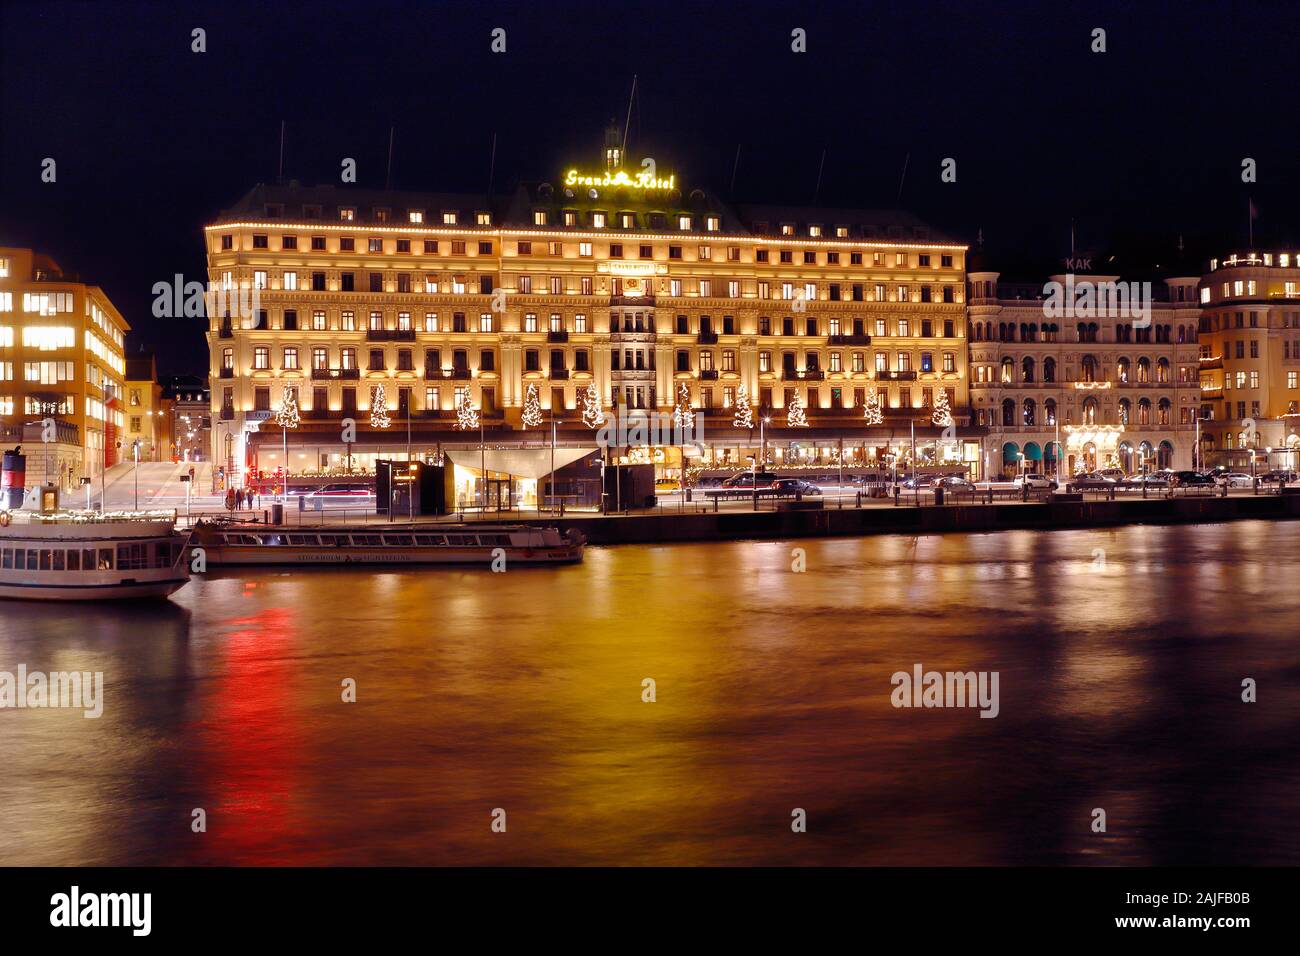 Stoccolma, Svezia - 3 Gennaio 2020: la scena notturna del Grand Hotel. Foto Stock